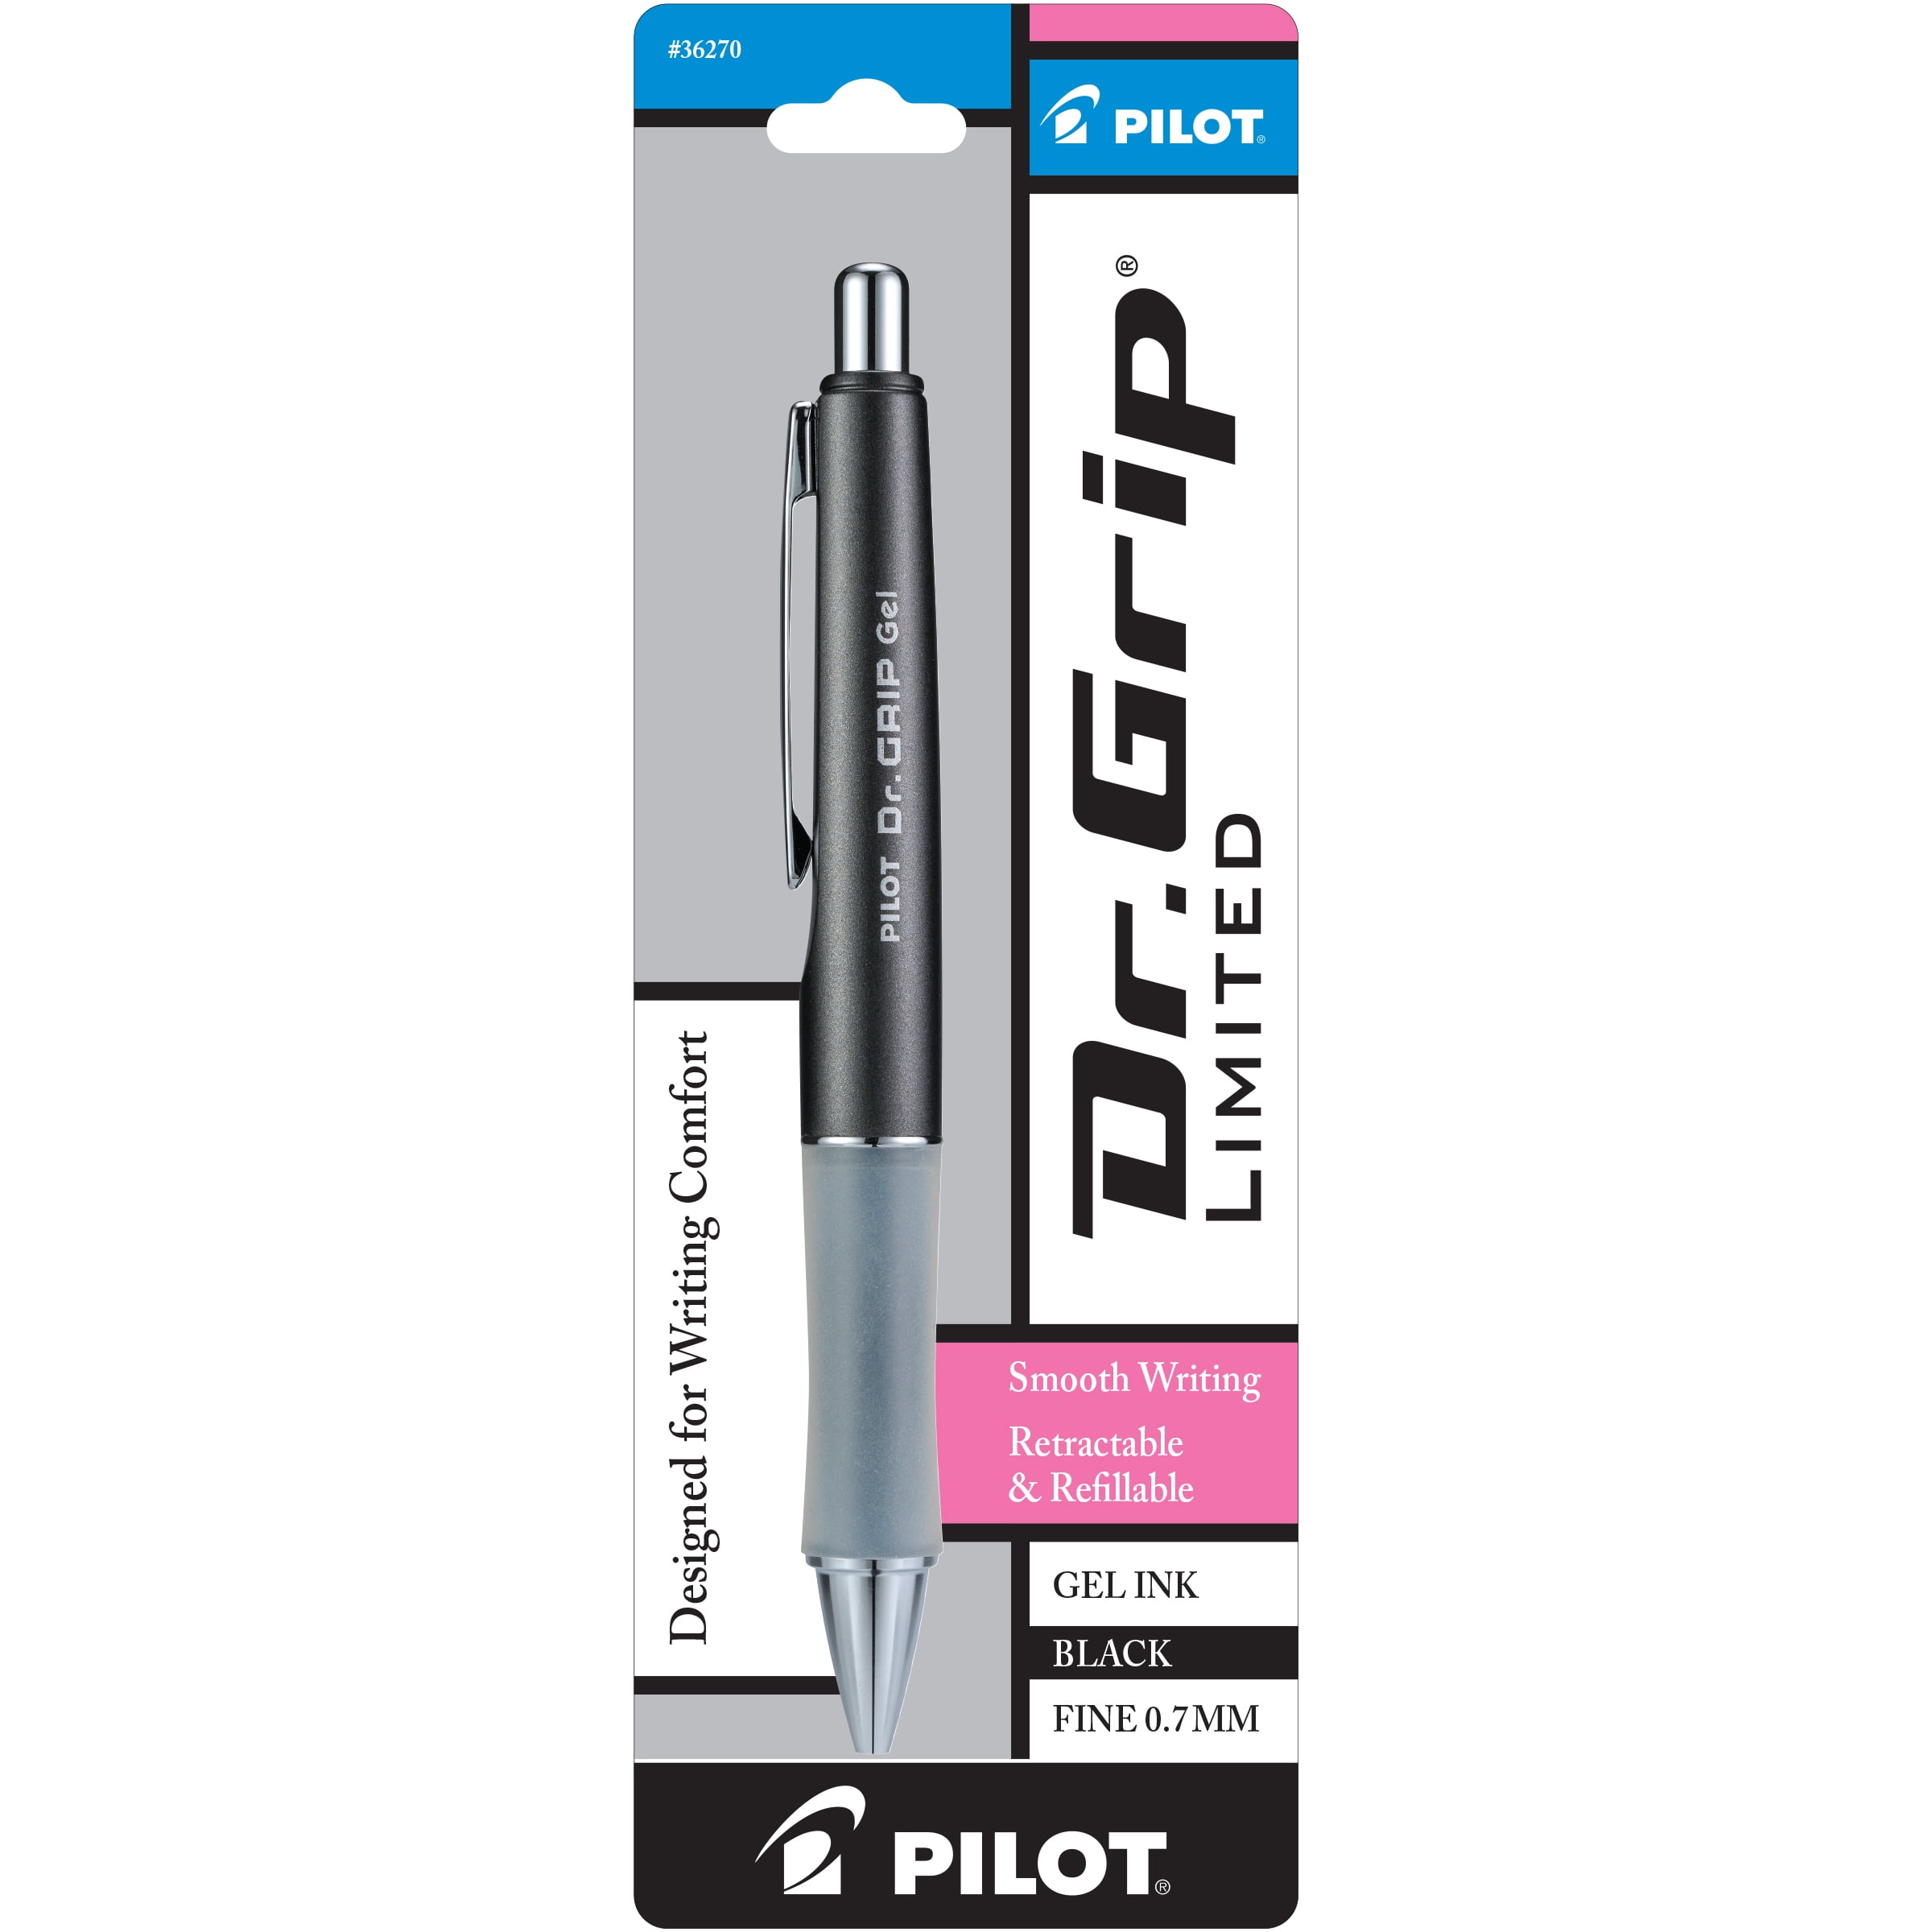 PILOT Dr. Grip Limited Retractable Gel Ink Pen, Fine Point, Gray Barrel, Black Ink, 1 Pack